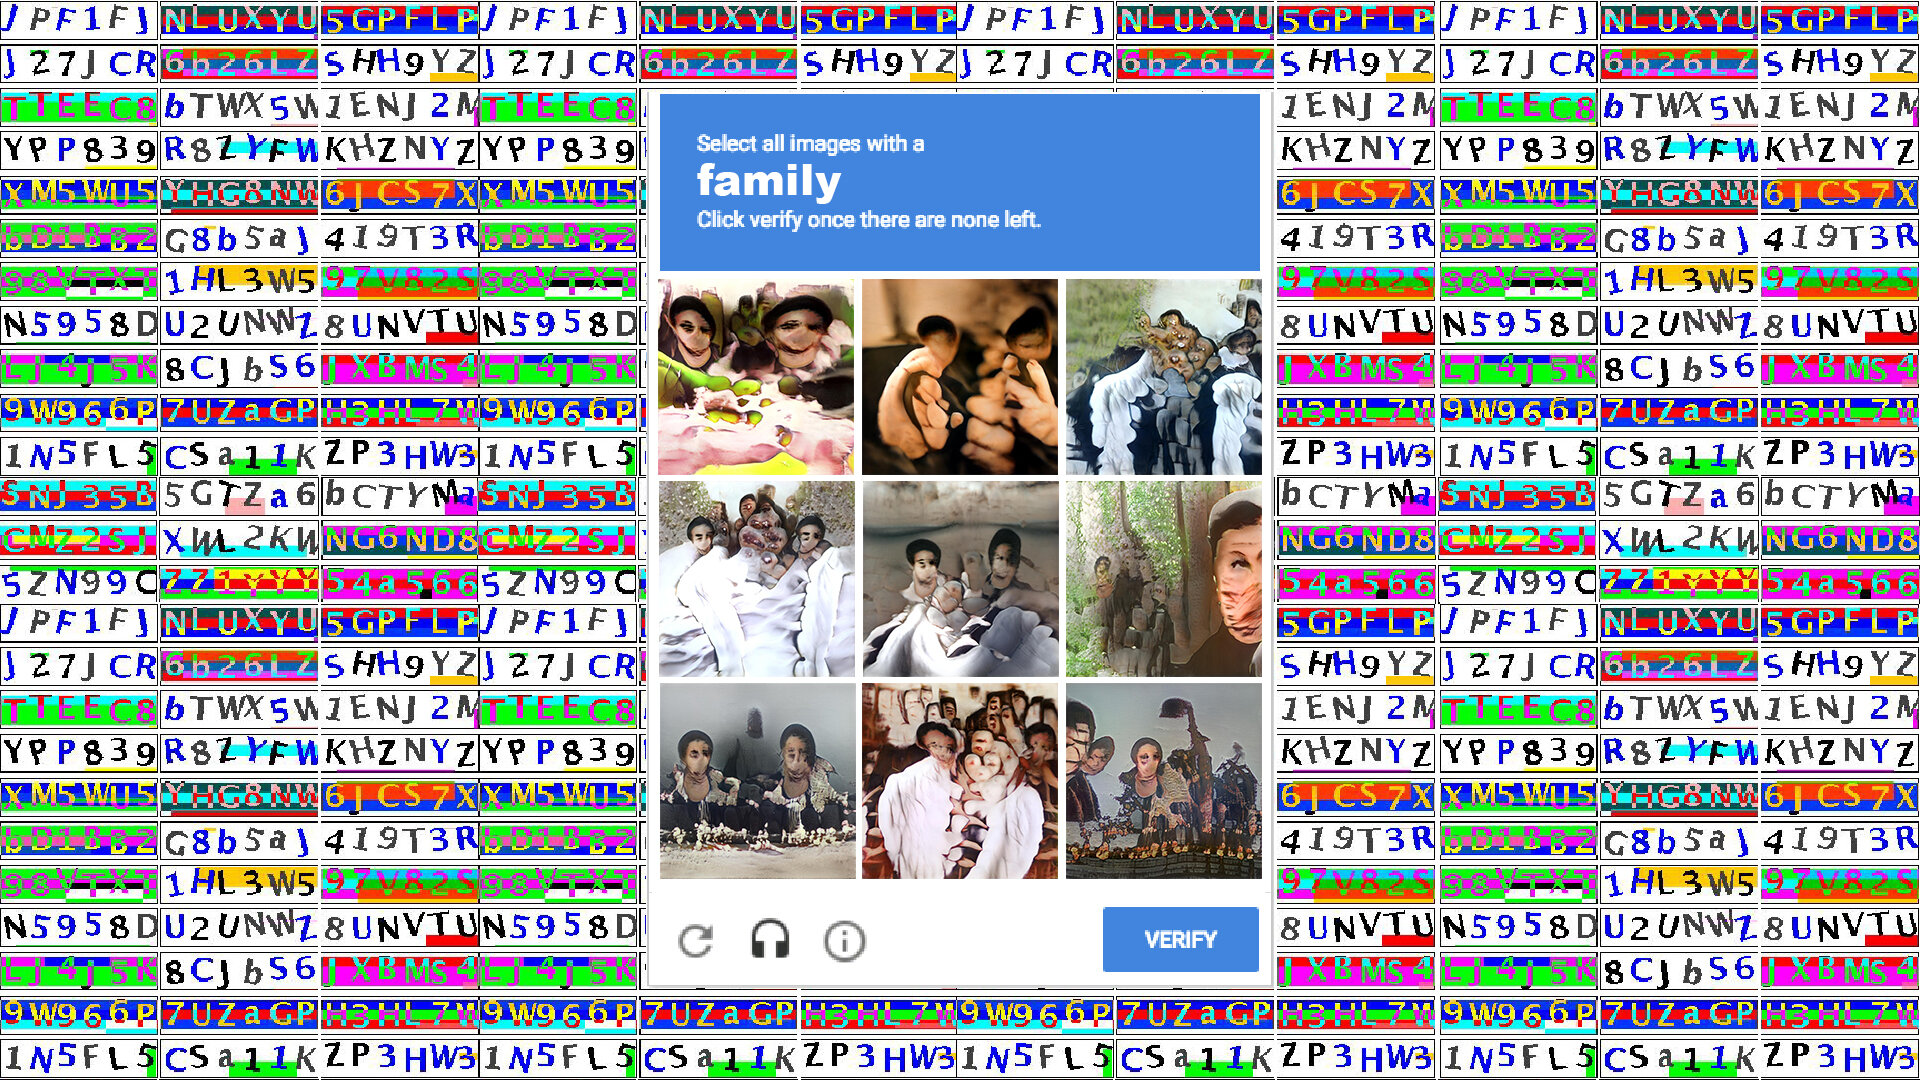 Captcha_Family.jpg